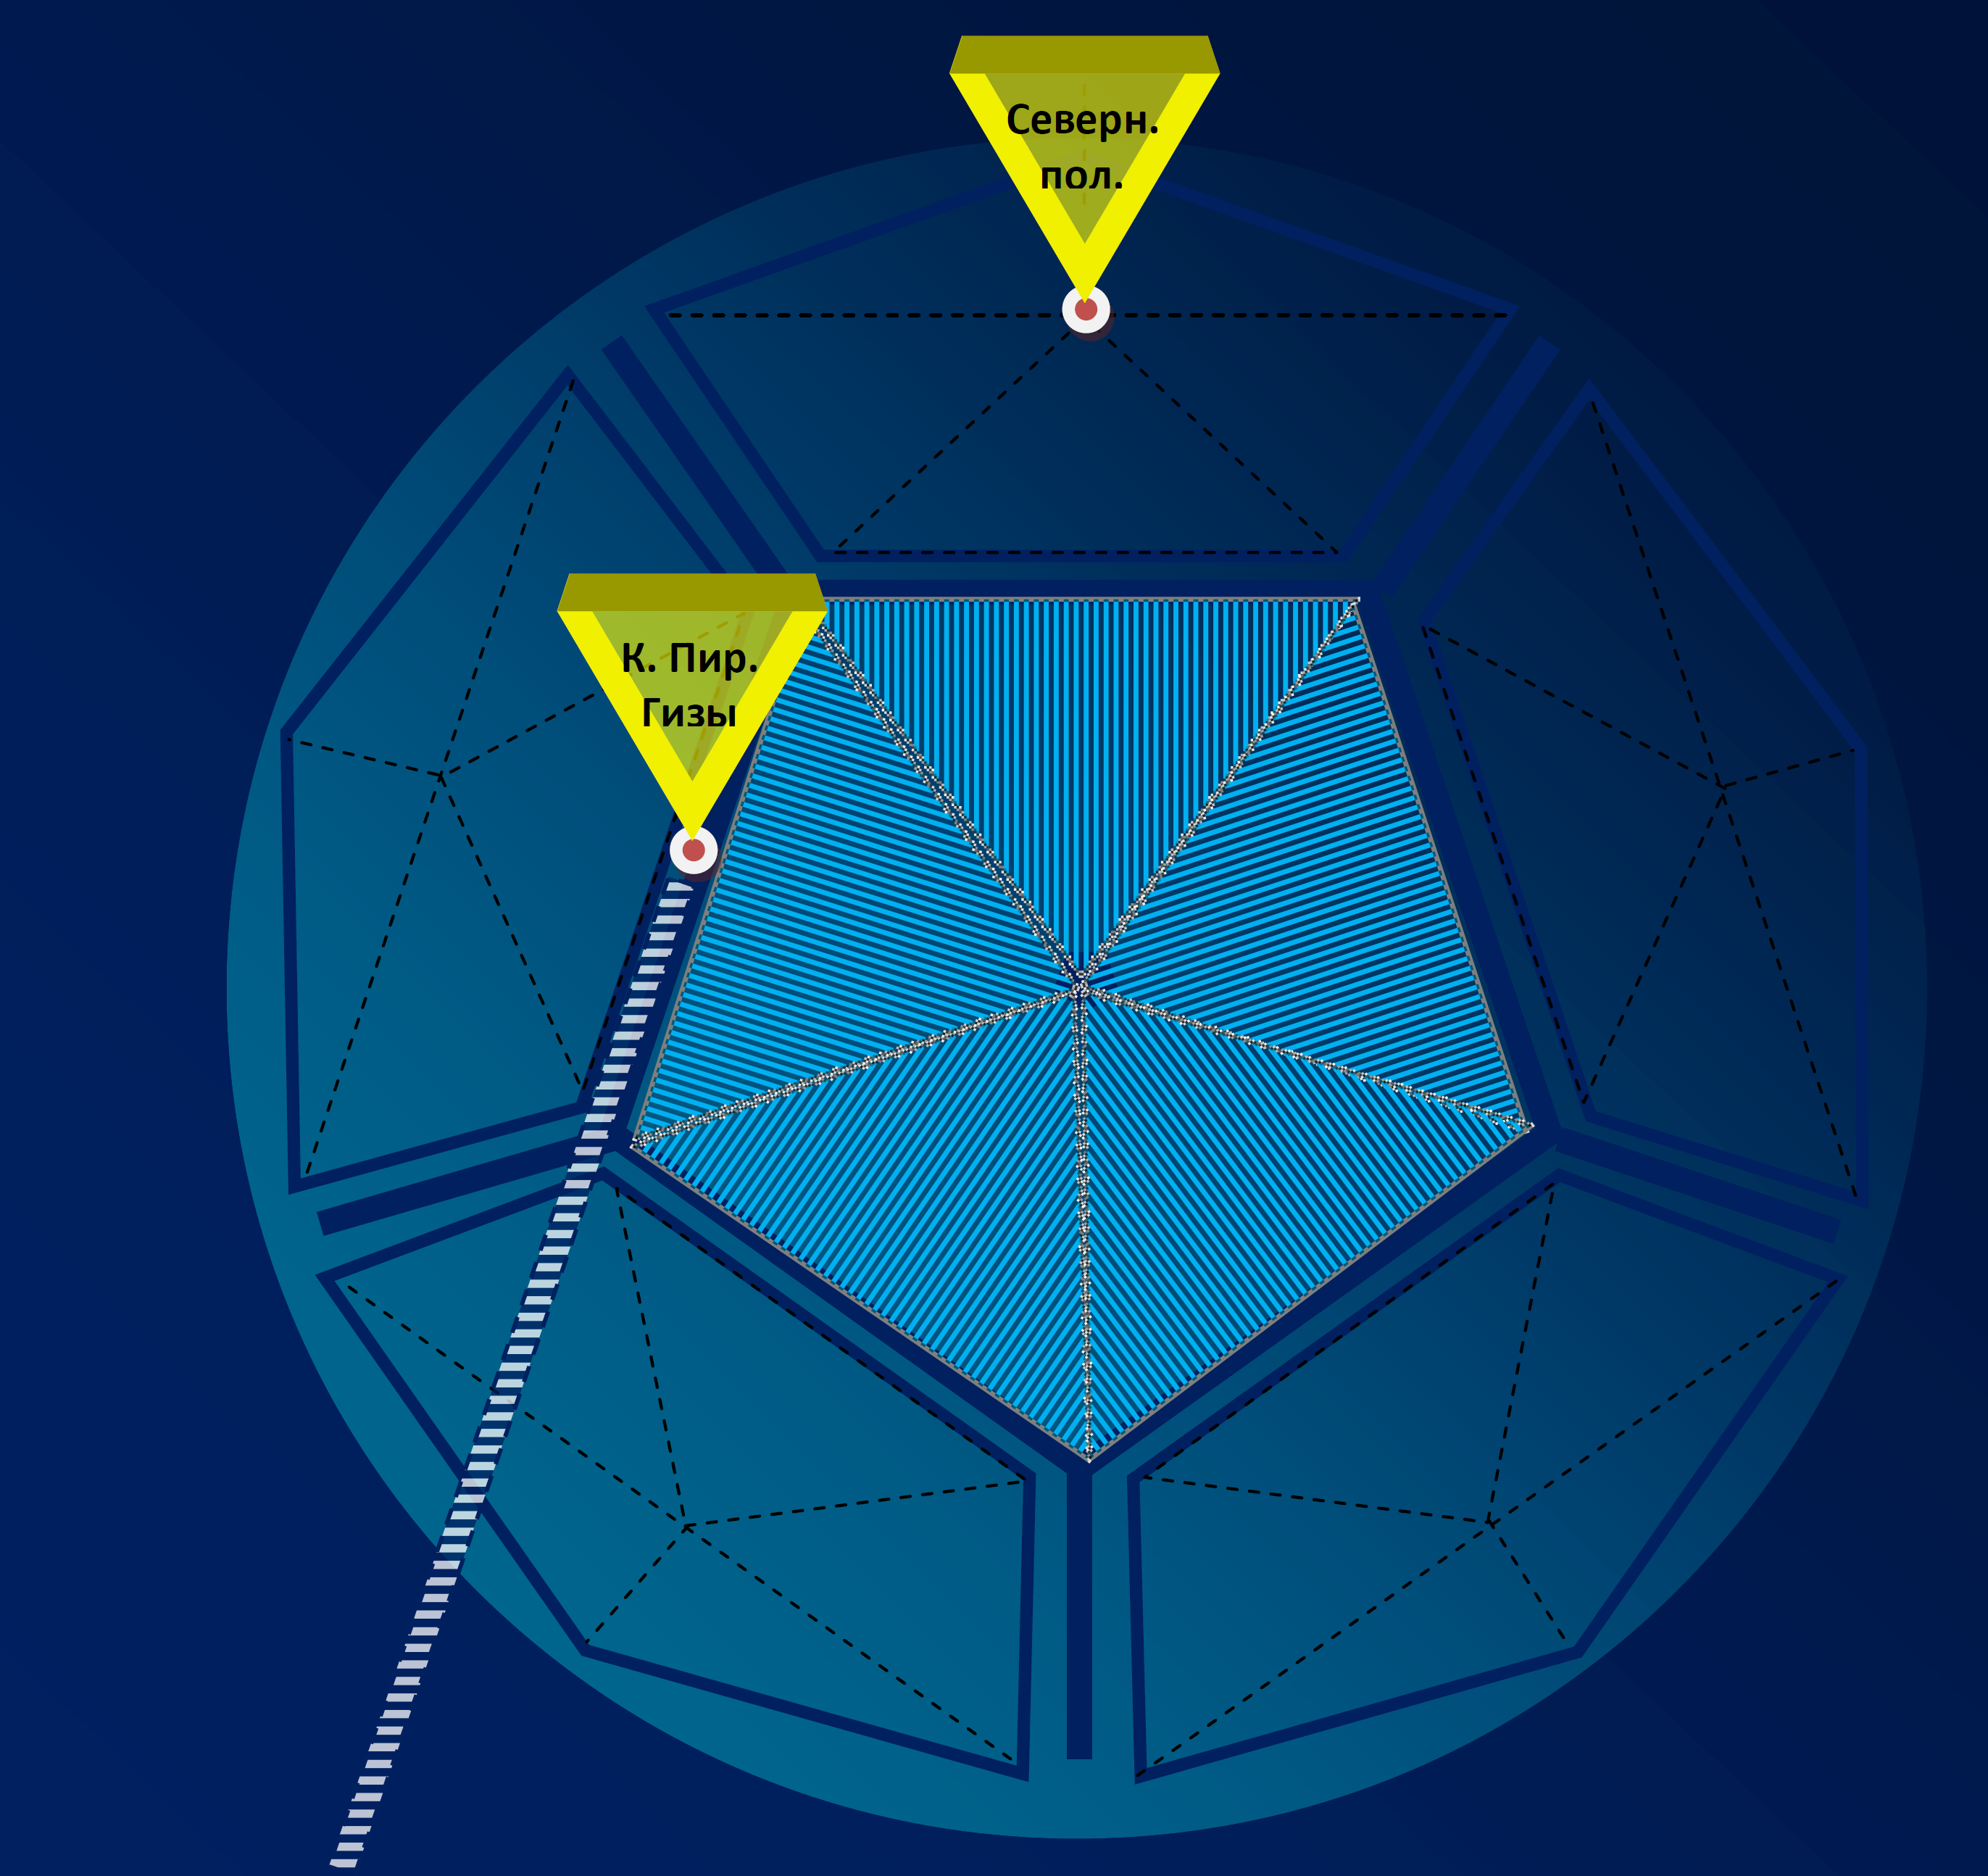 Рисунок 6 – Структура и направленность плоских гравитационных волн одного из 12-ти пентагонов предполагаемой додекаэдровой структуры гравитационного поля Земли и использование плоских гравитационных волн в качестве несущих для устройства связи (комплекс пирамид Гизы) в виде антенны направленного действия